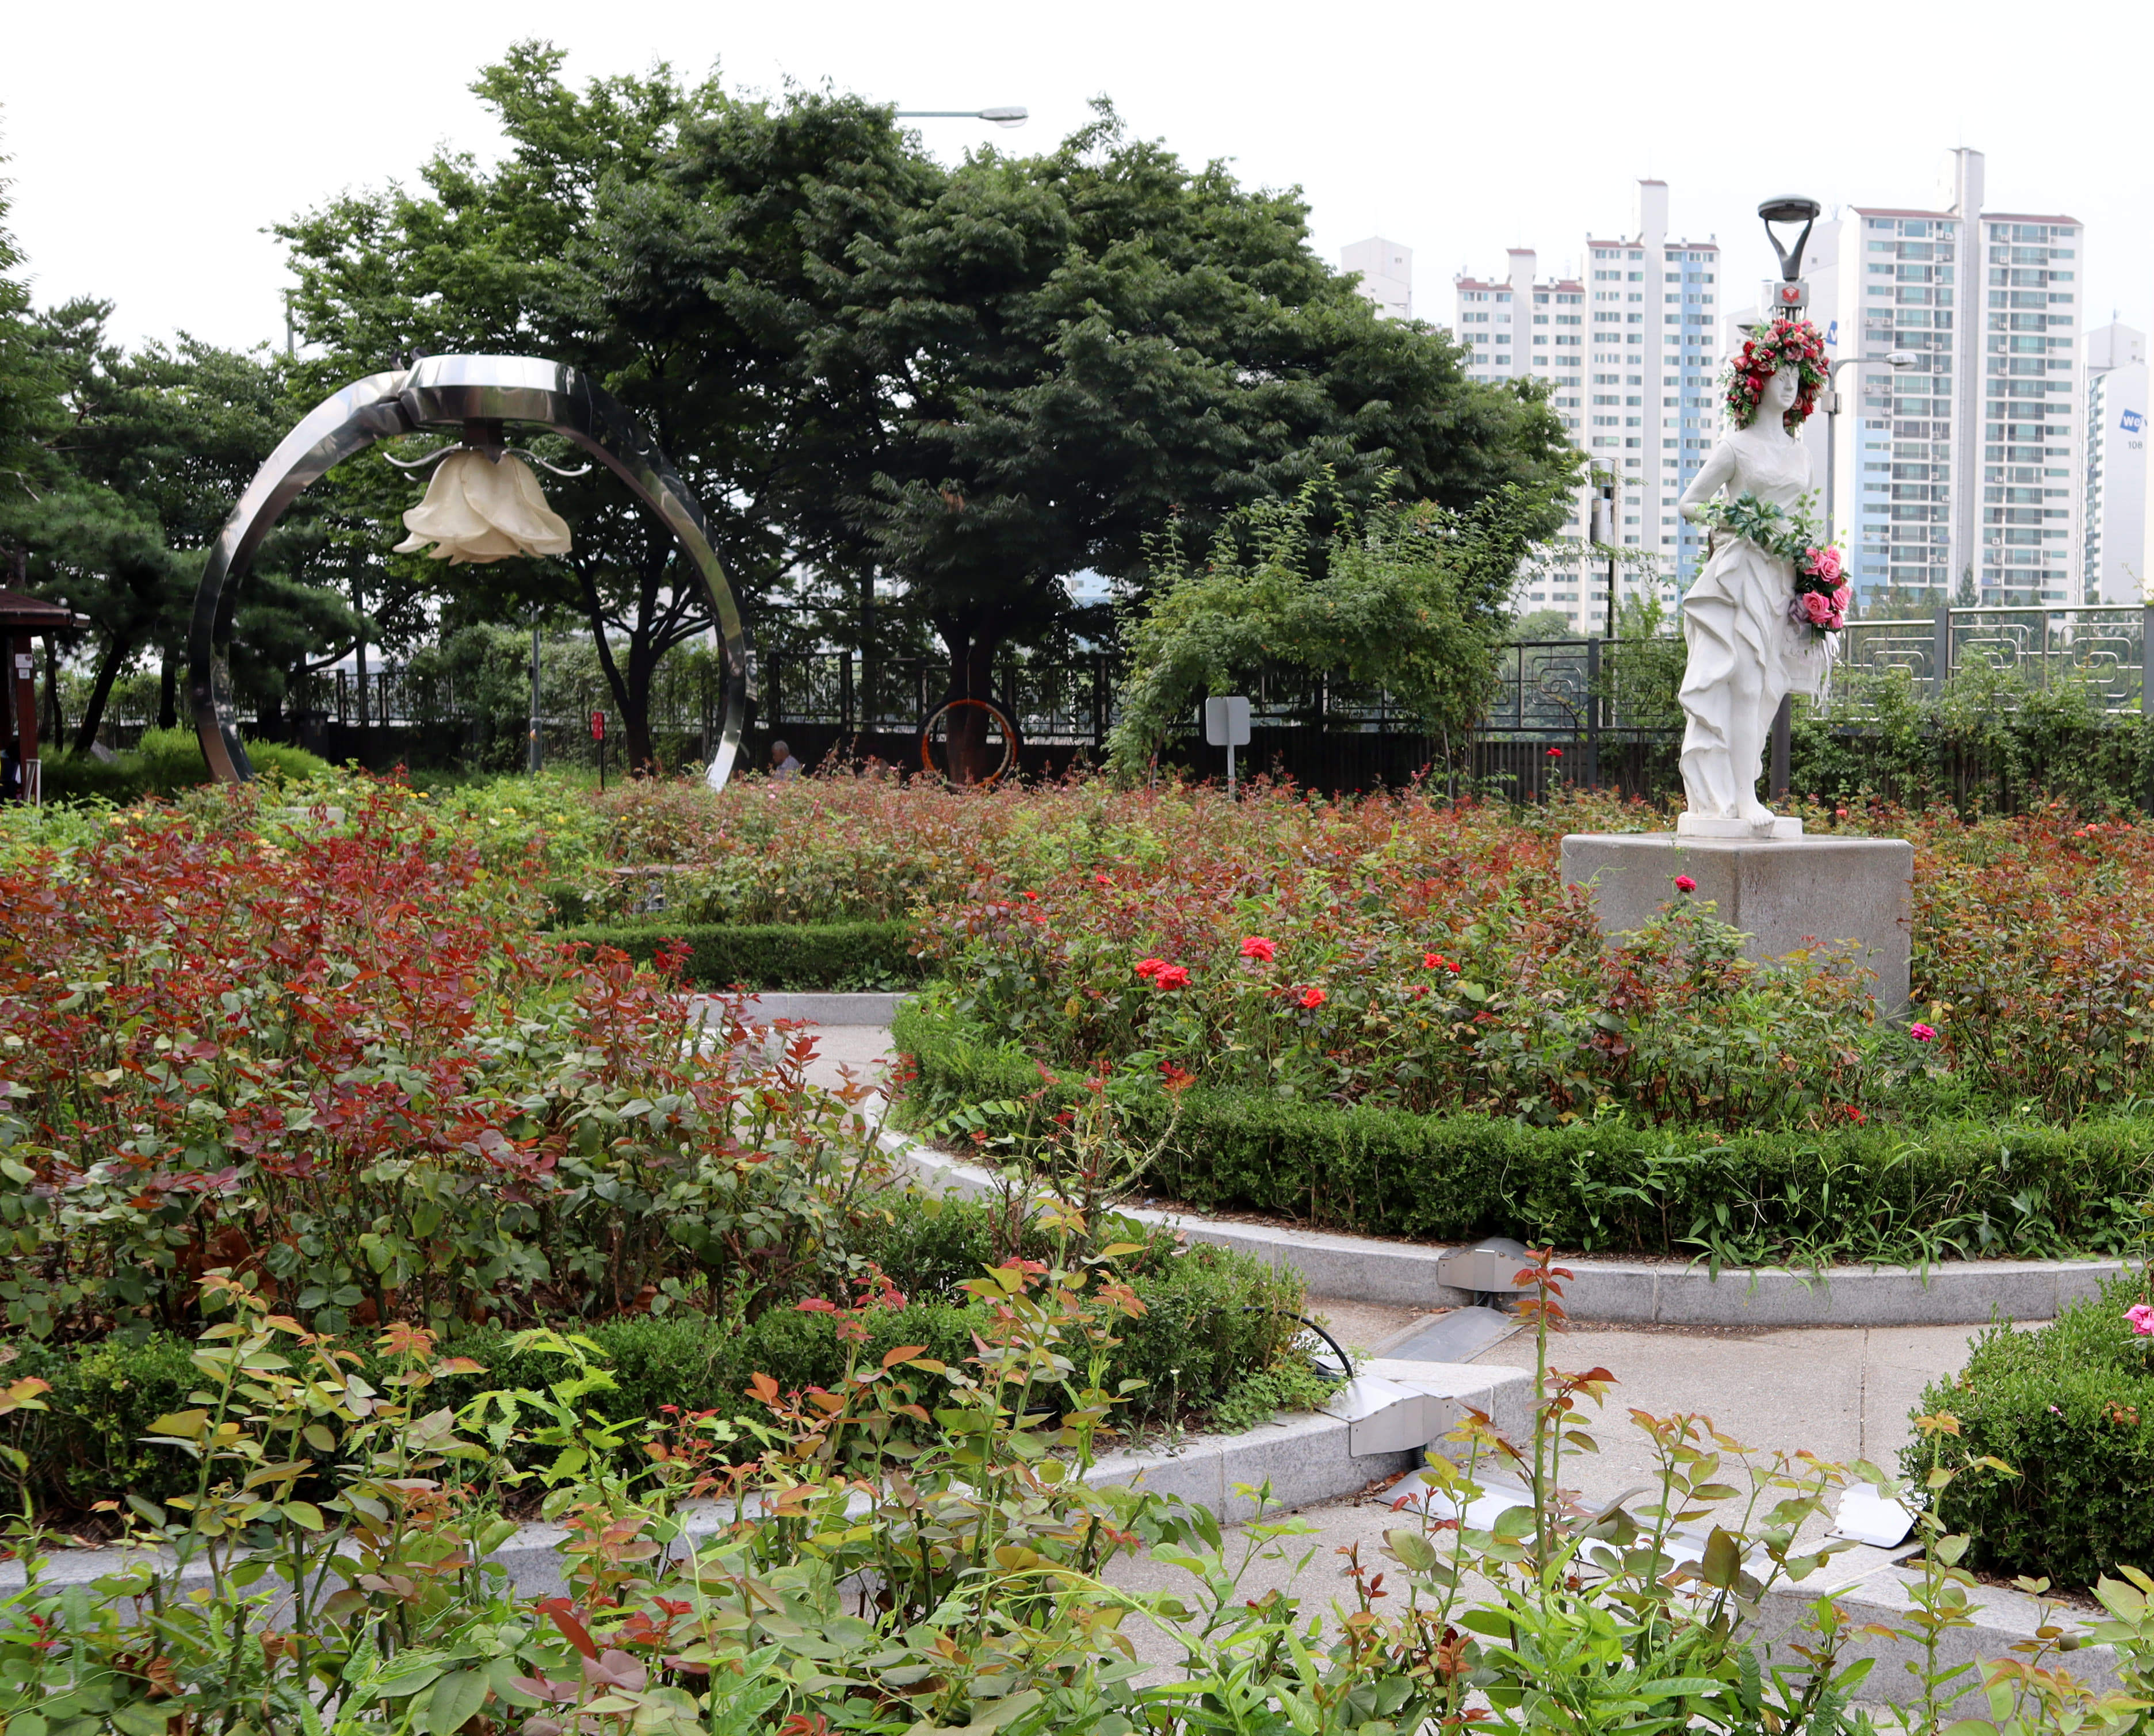 서울장미공원(중랑장미공원)5 : 장미가 피어있는 서울장미공원(중랑장미공원) 외부 산책로 전경